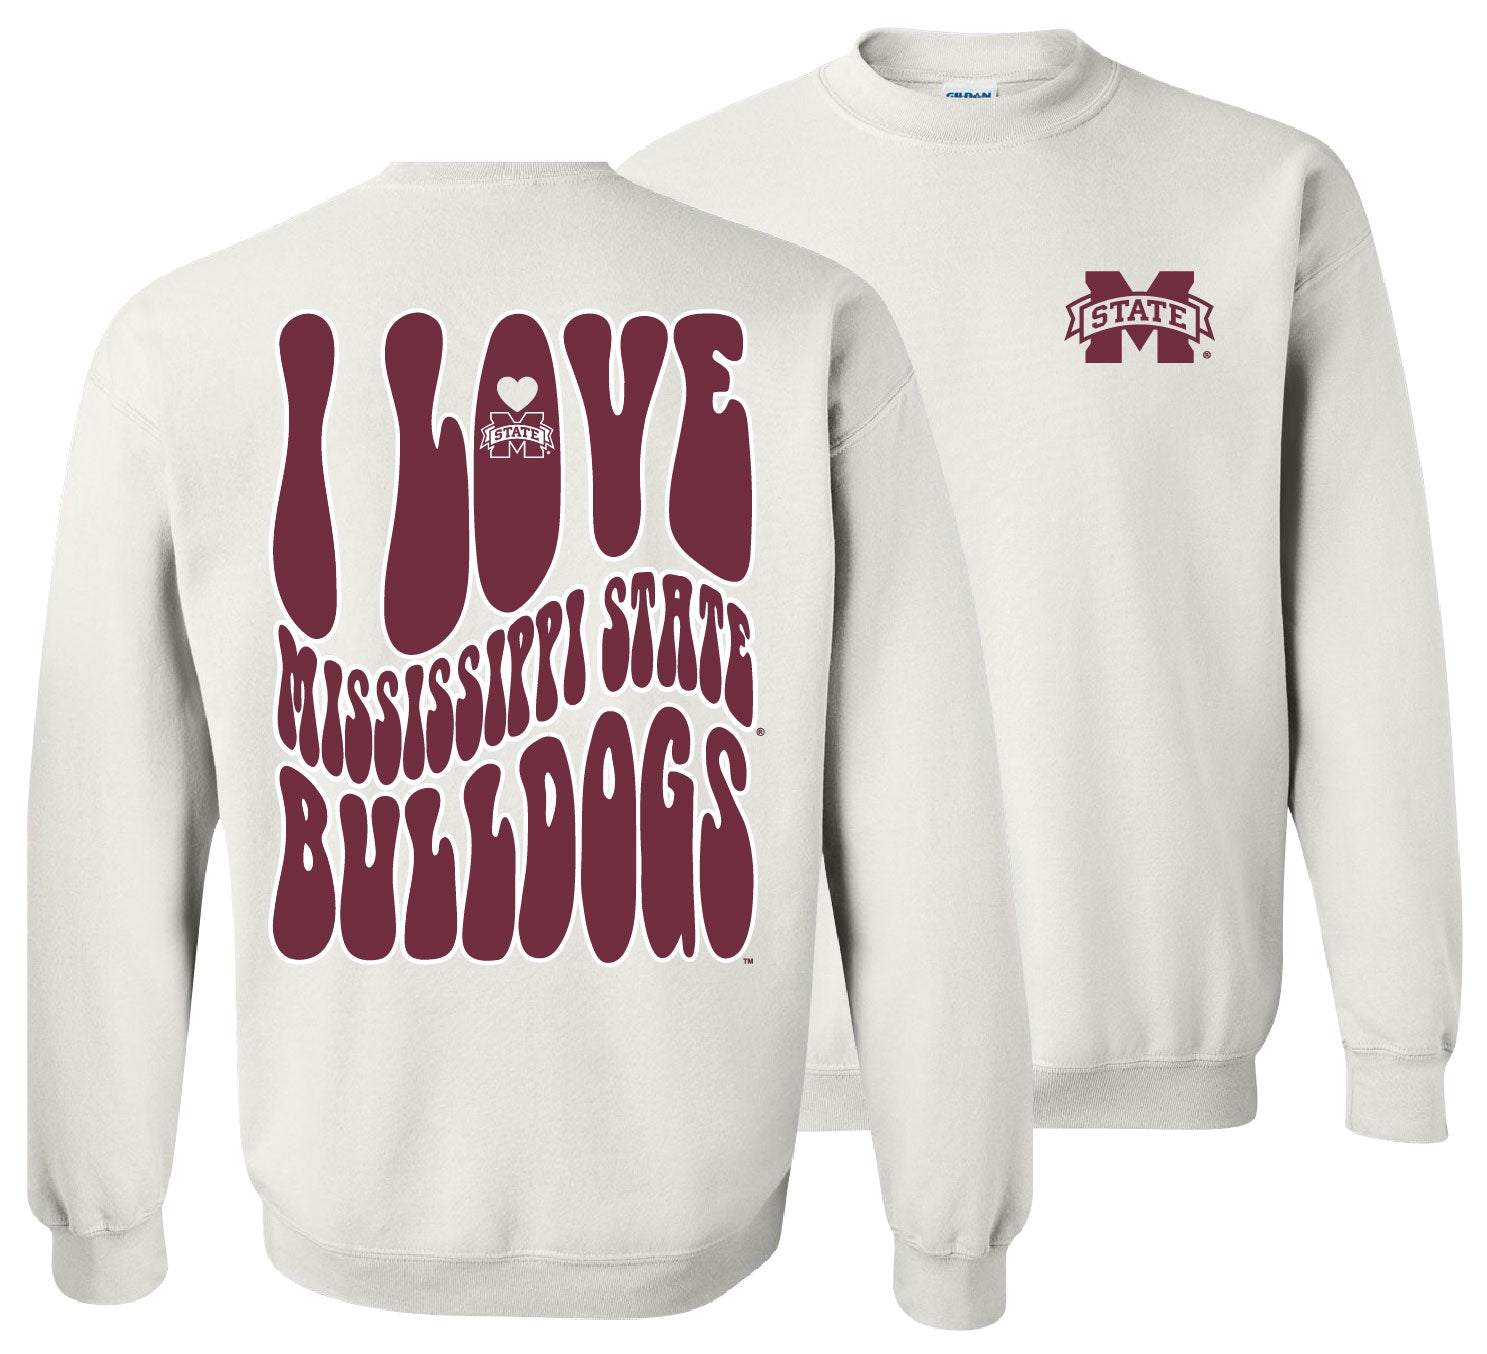 College-Mississippi State Love Team Sweatshirt-White